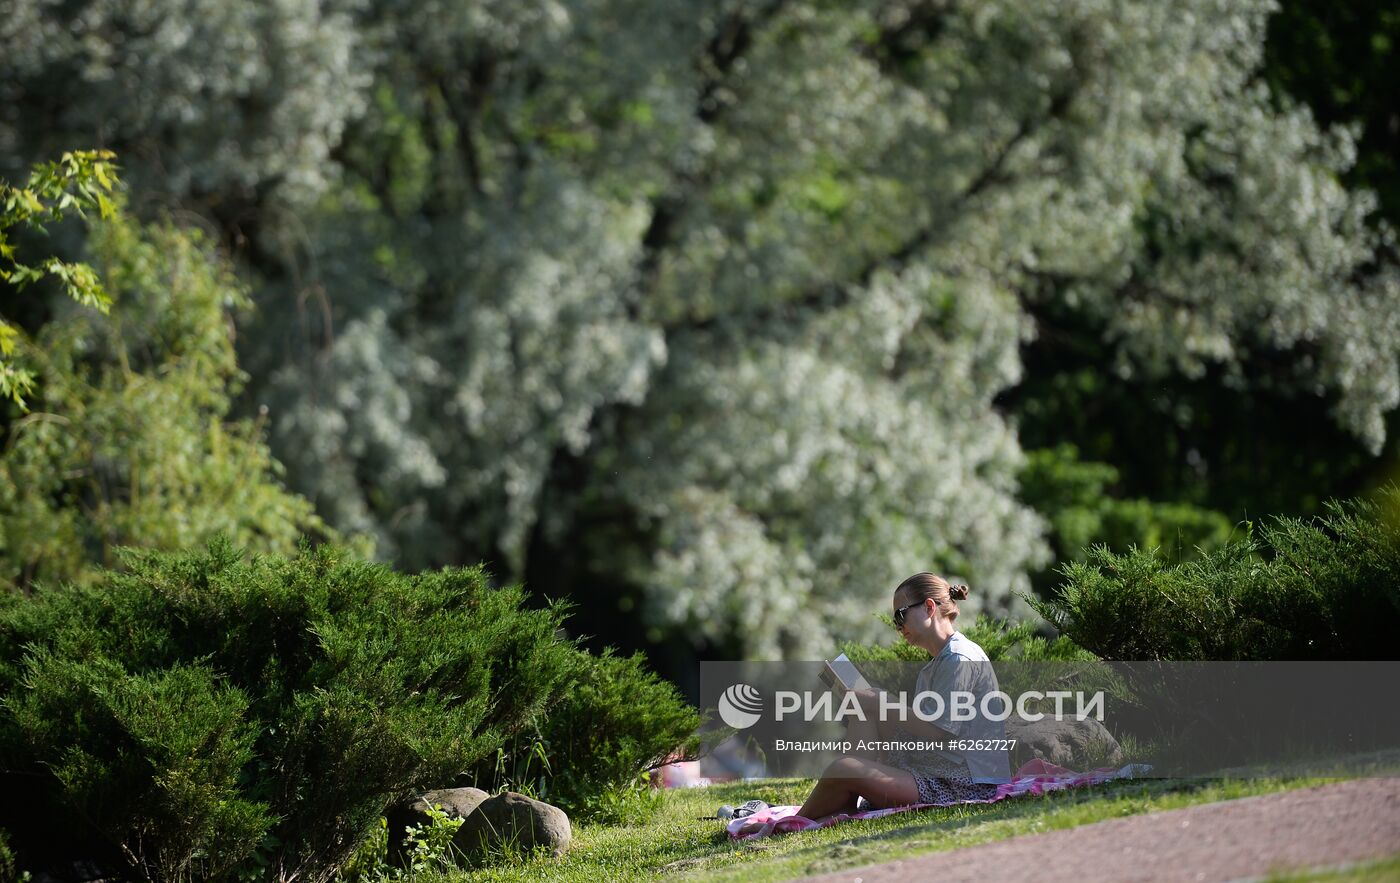 Отдыхающие в парке "Дубки" в Москве